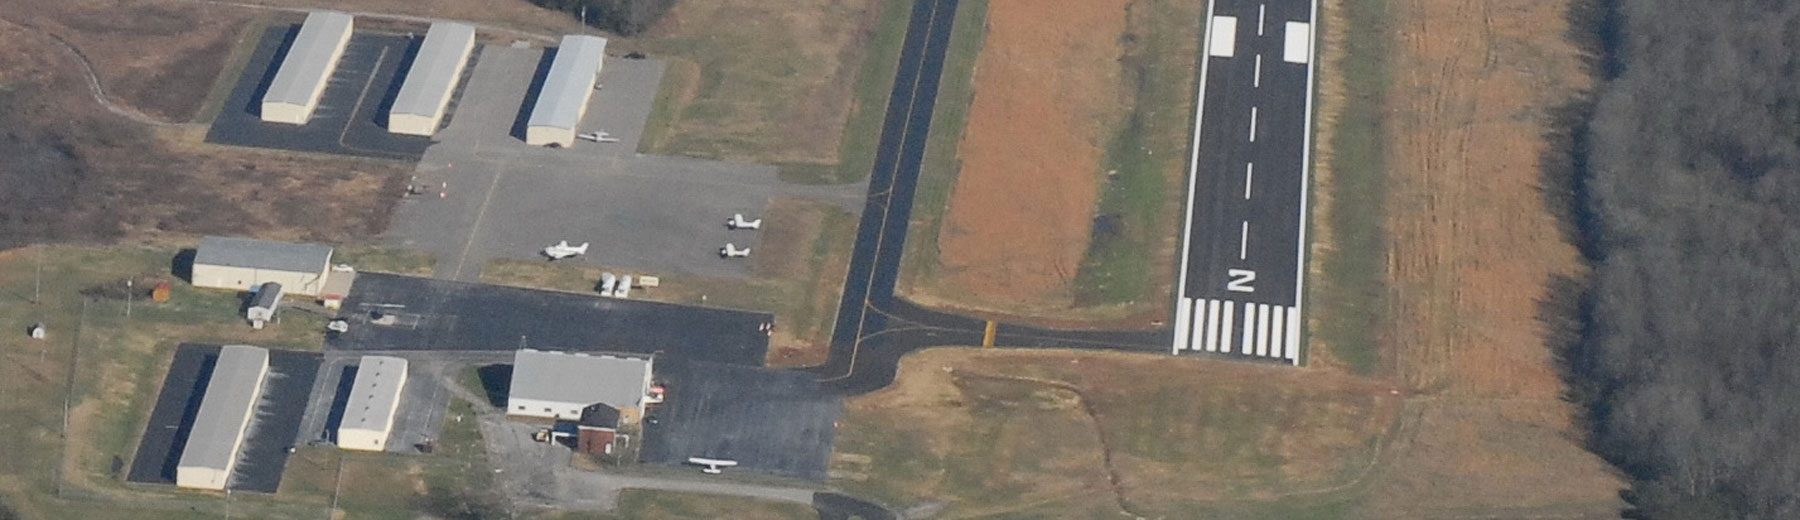 Arial view of runway